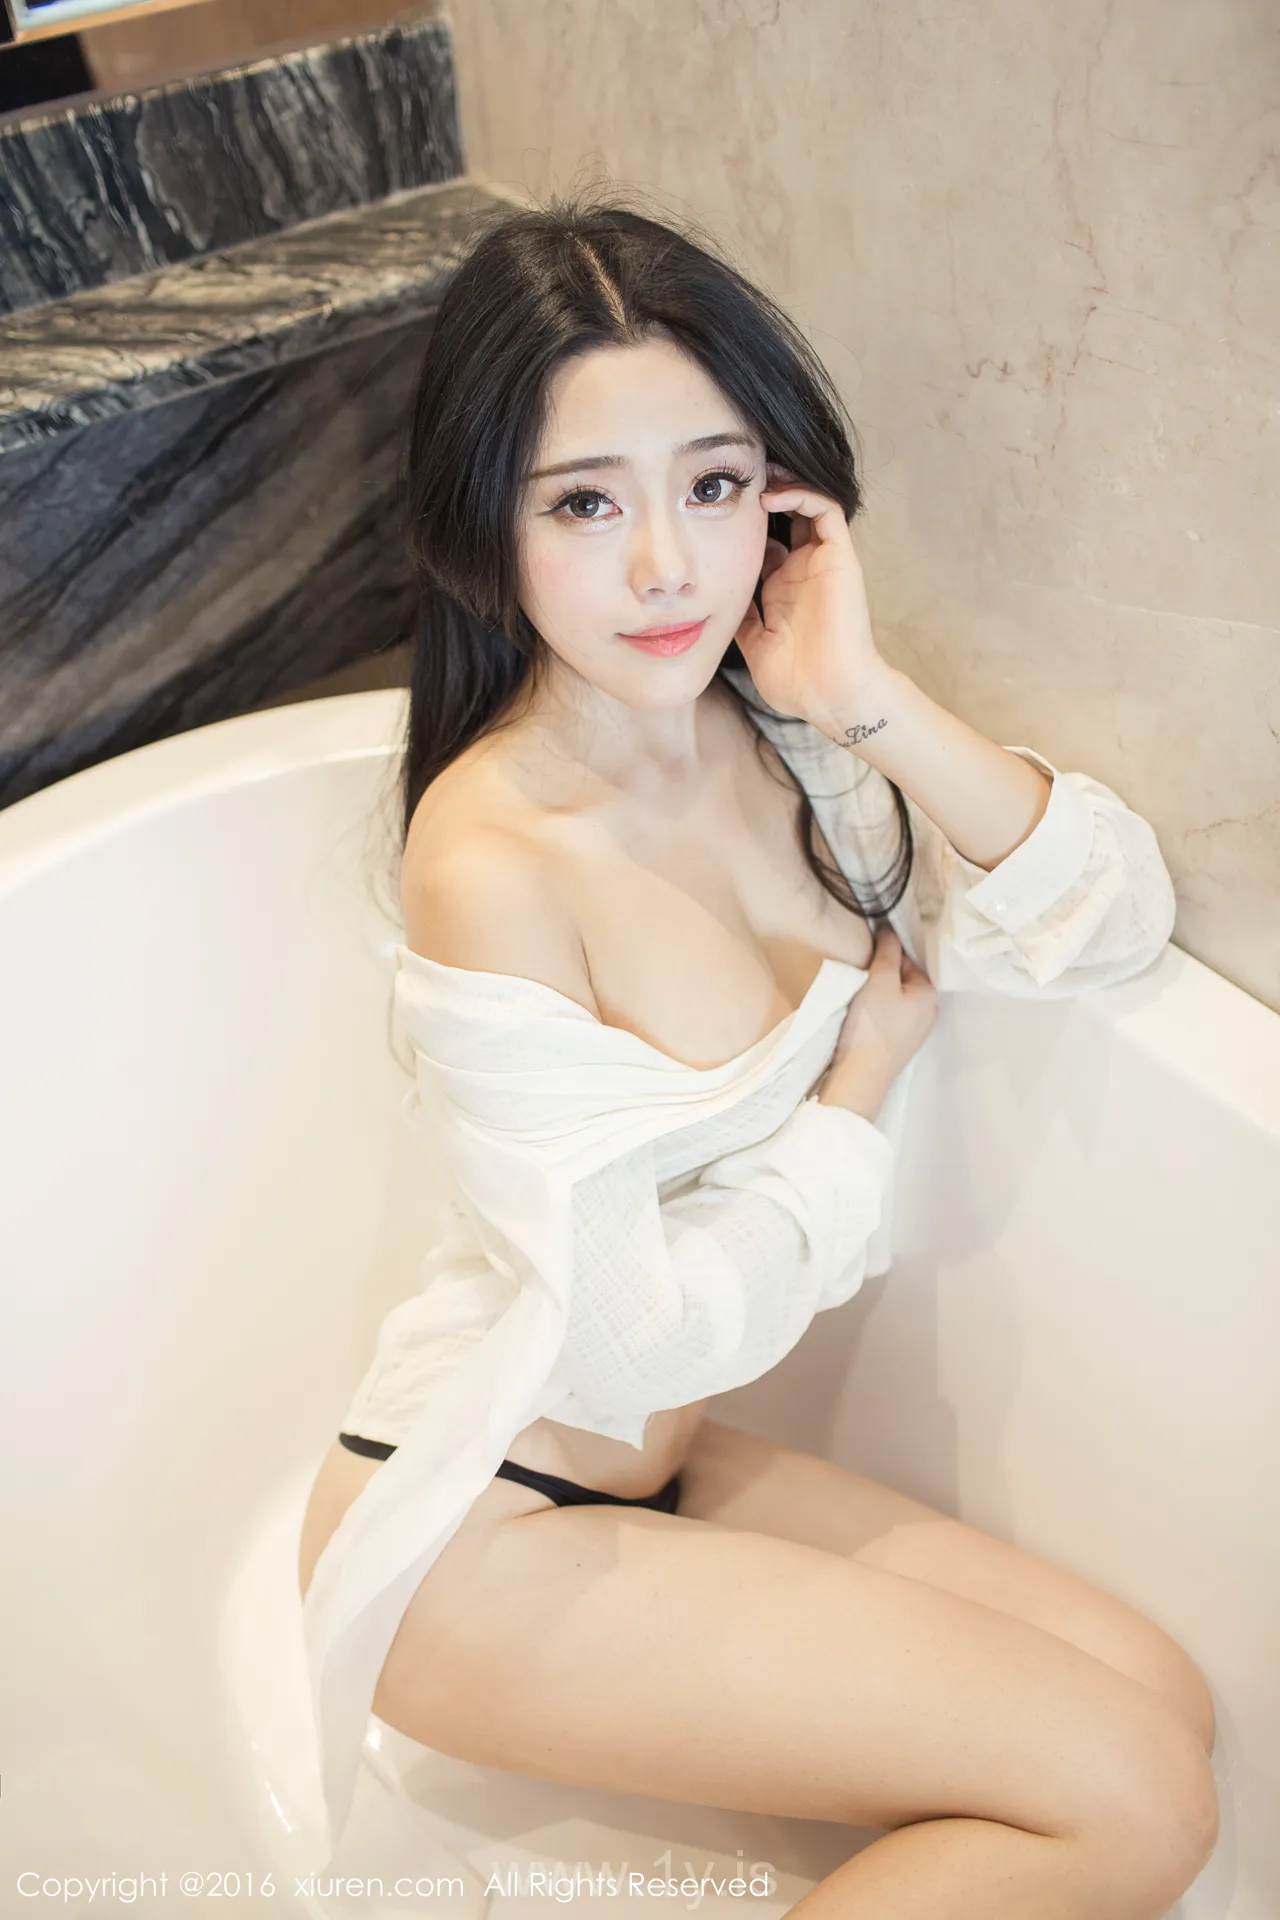 XIUREN(秀人网) NO.519 Good-looking Asian Model 兜豆靓Youlina